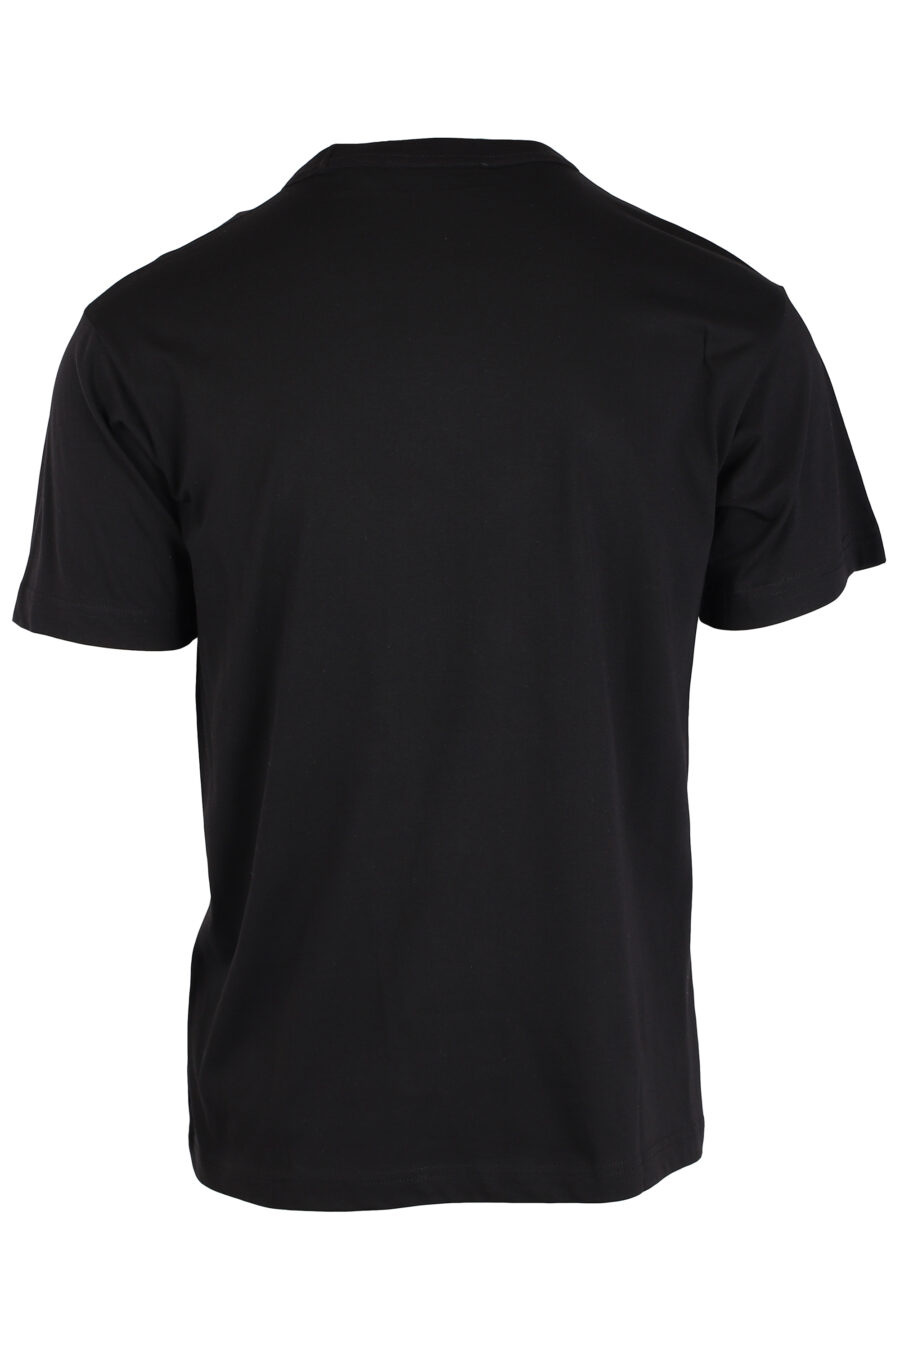 Schwarzes T-Shirt mit weißem runden Logo - IMG 4008